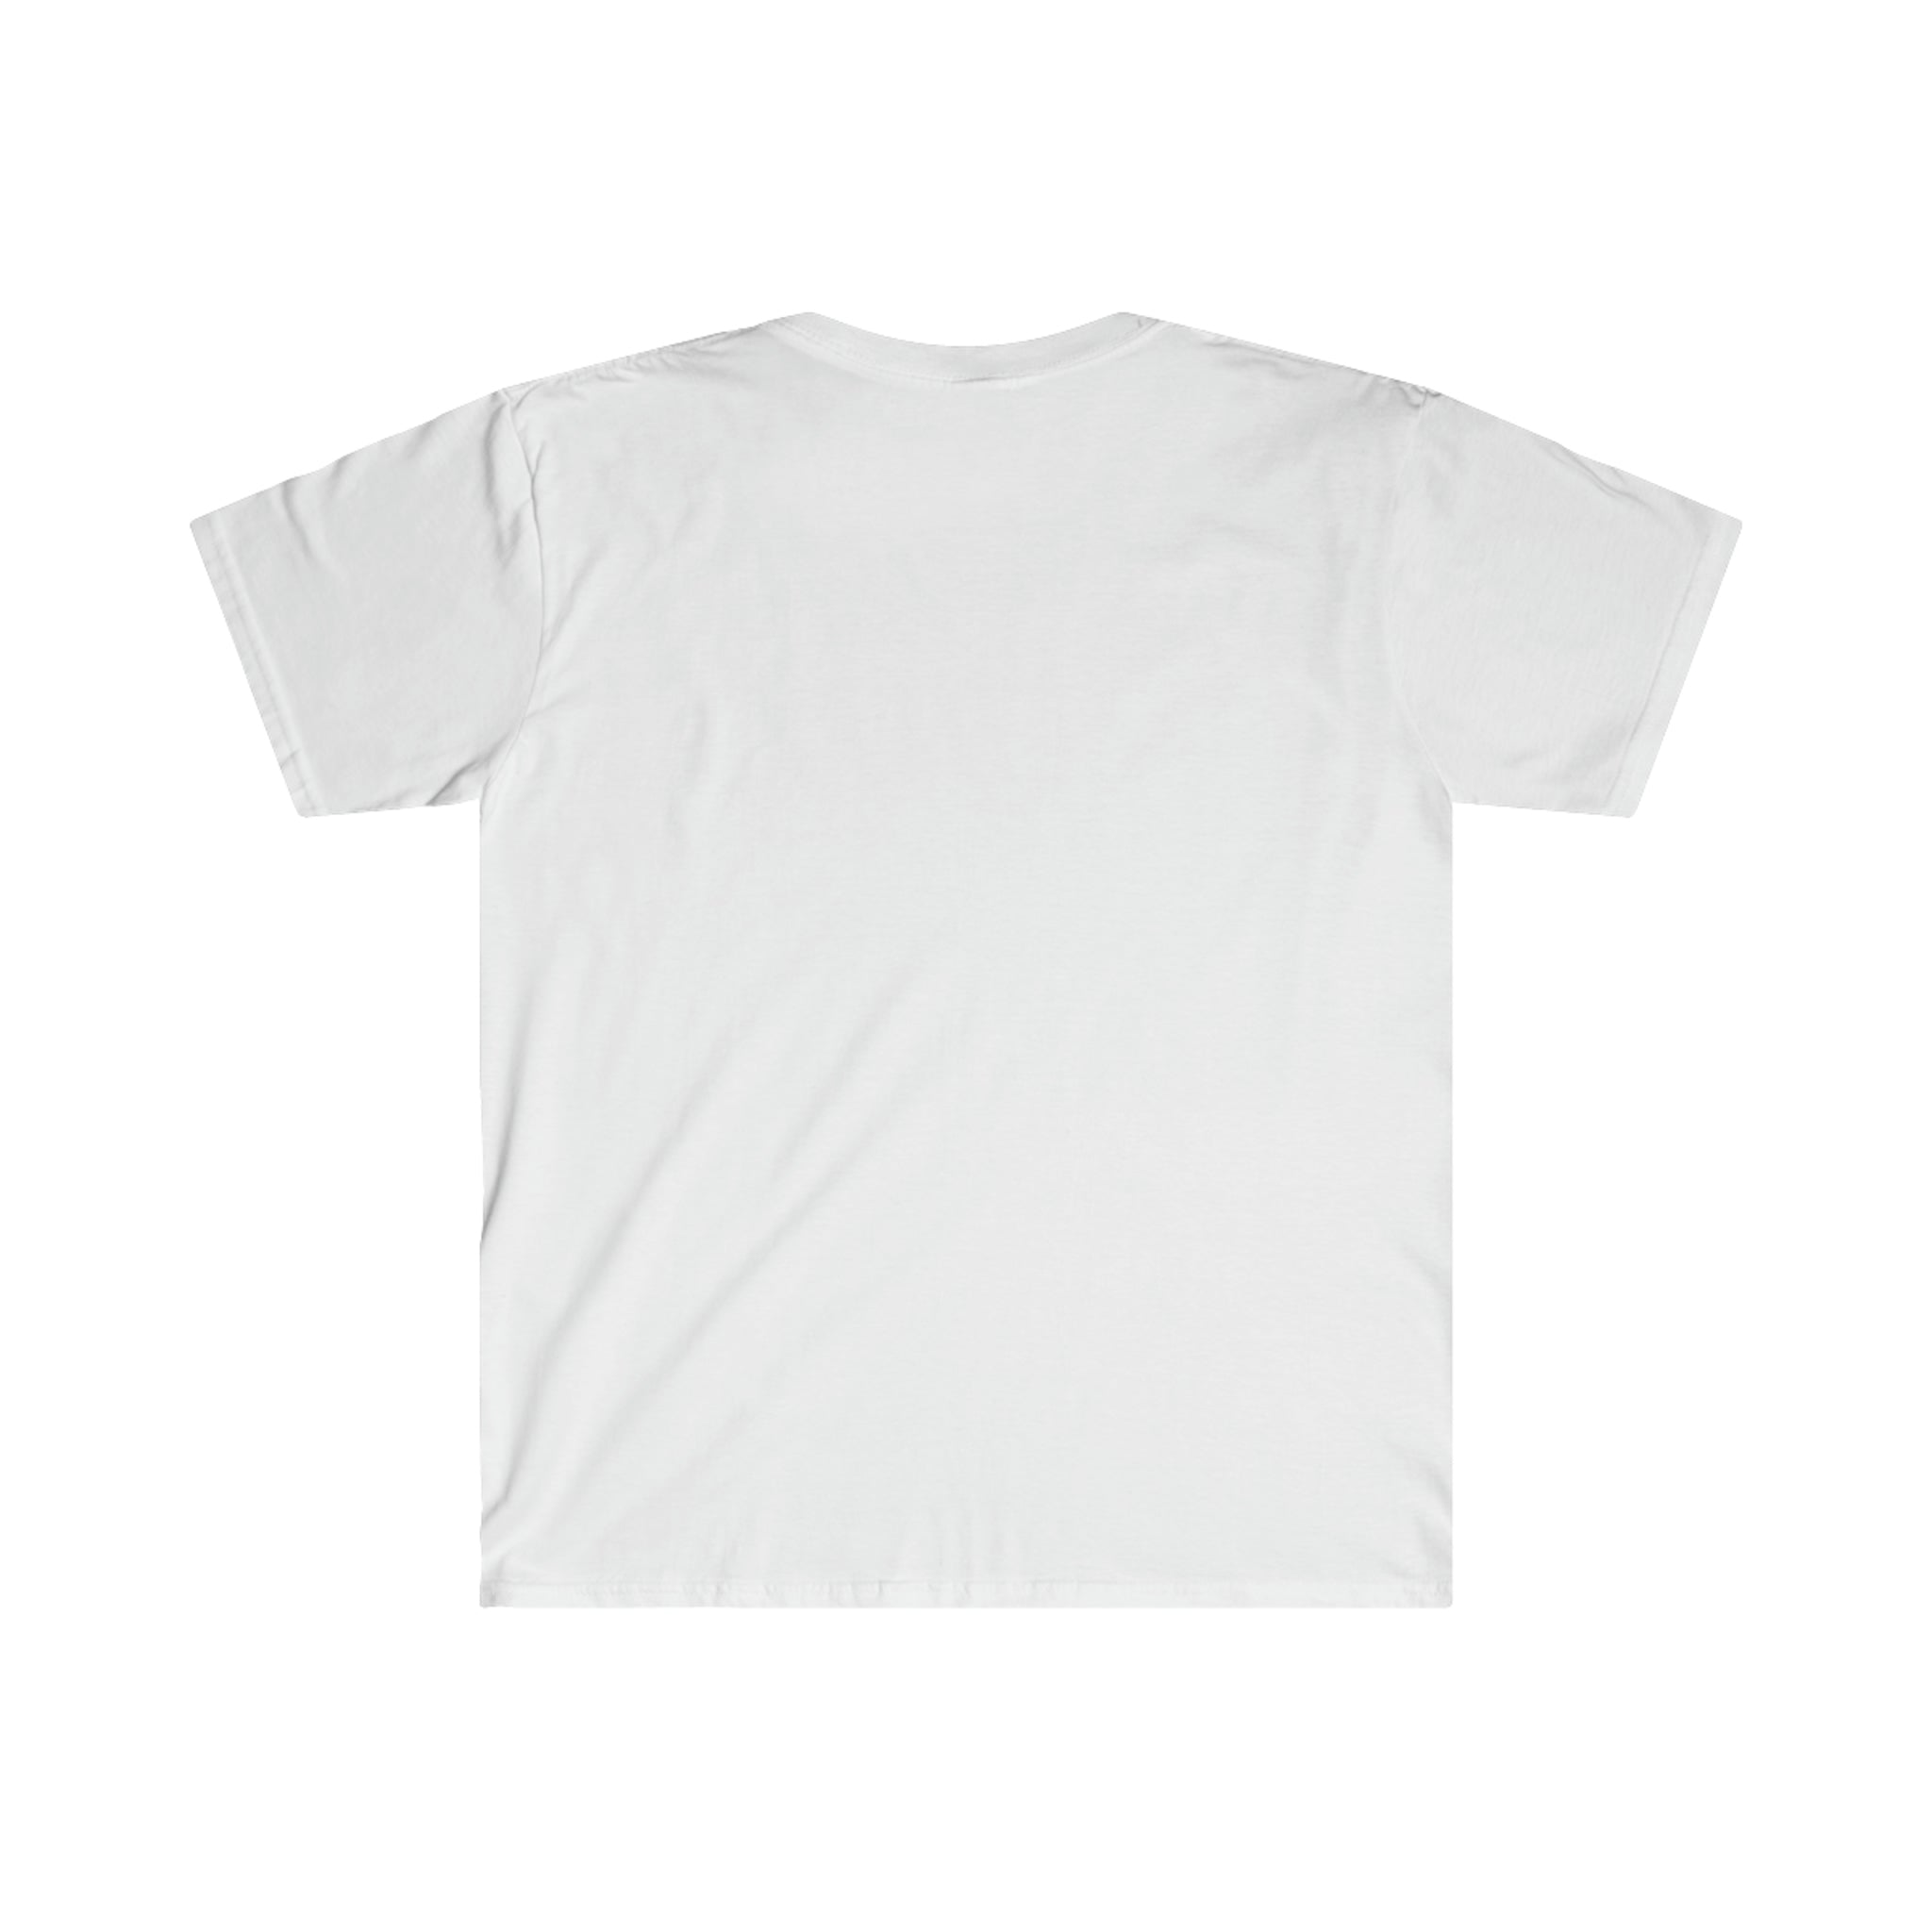 Printify T-Shirt Music City - Unisex Softstyle T-Shirt